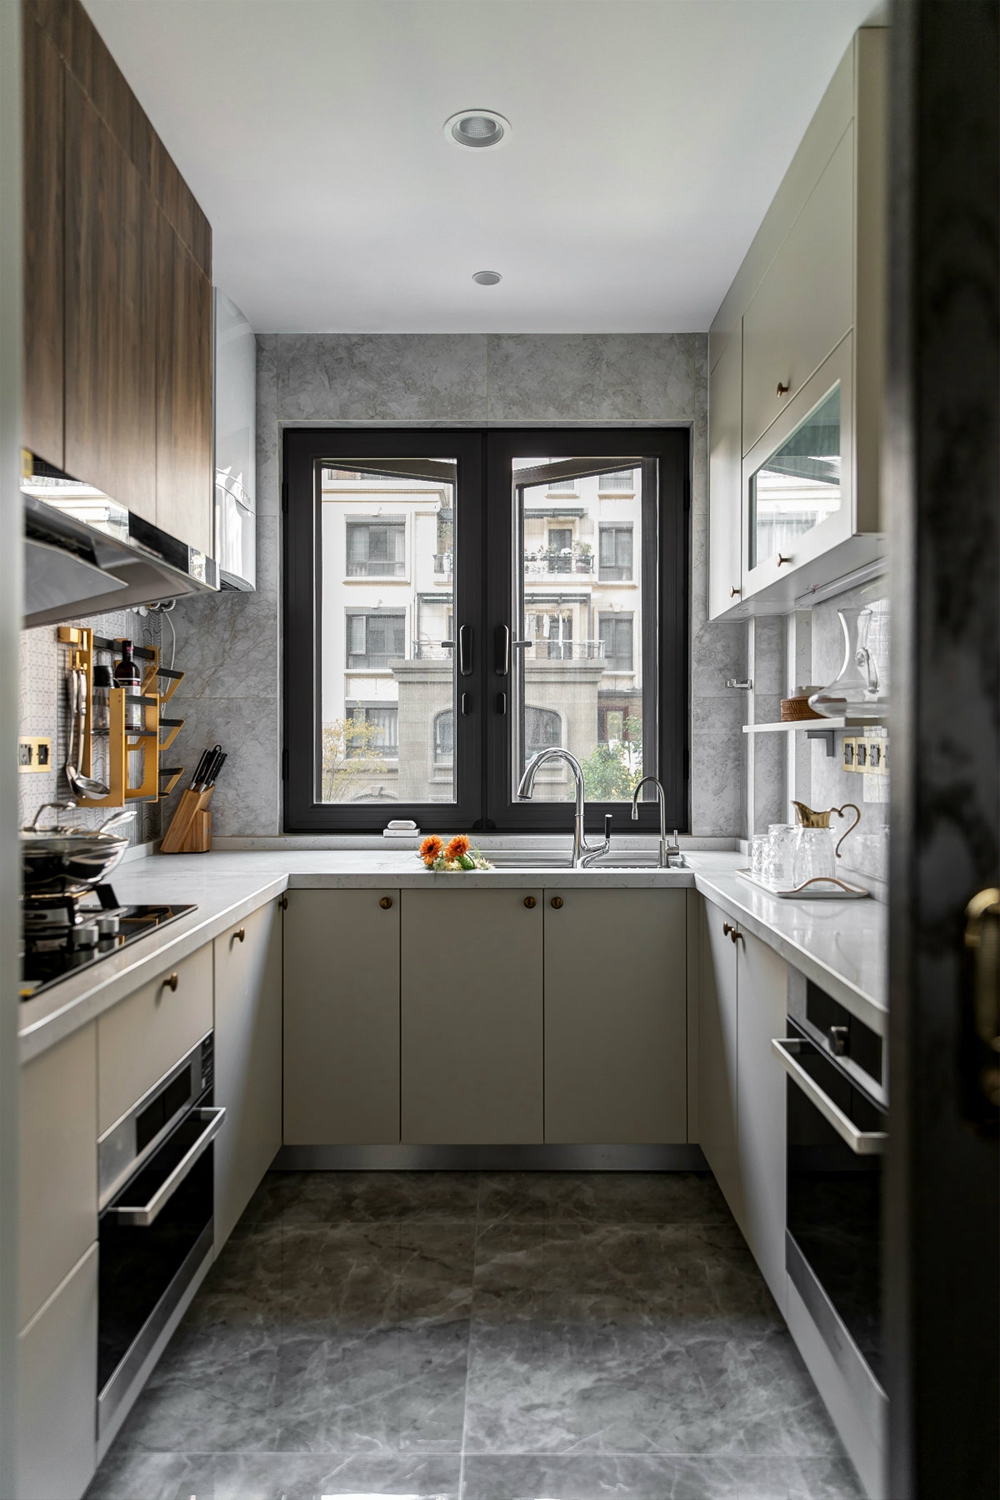 厨房空间使用米色橱柜搭配木质吊柜的设计方式，整体现代而不凌厉。